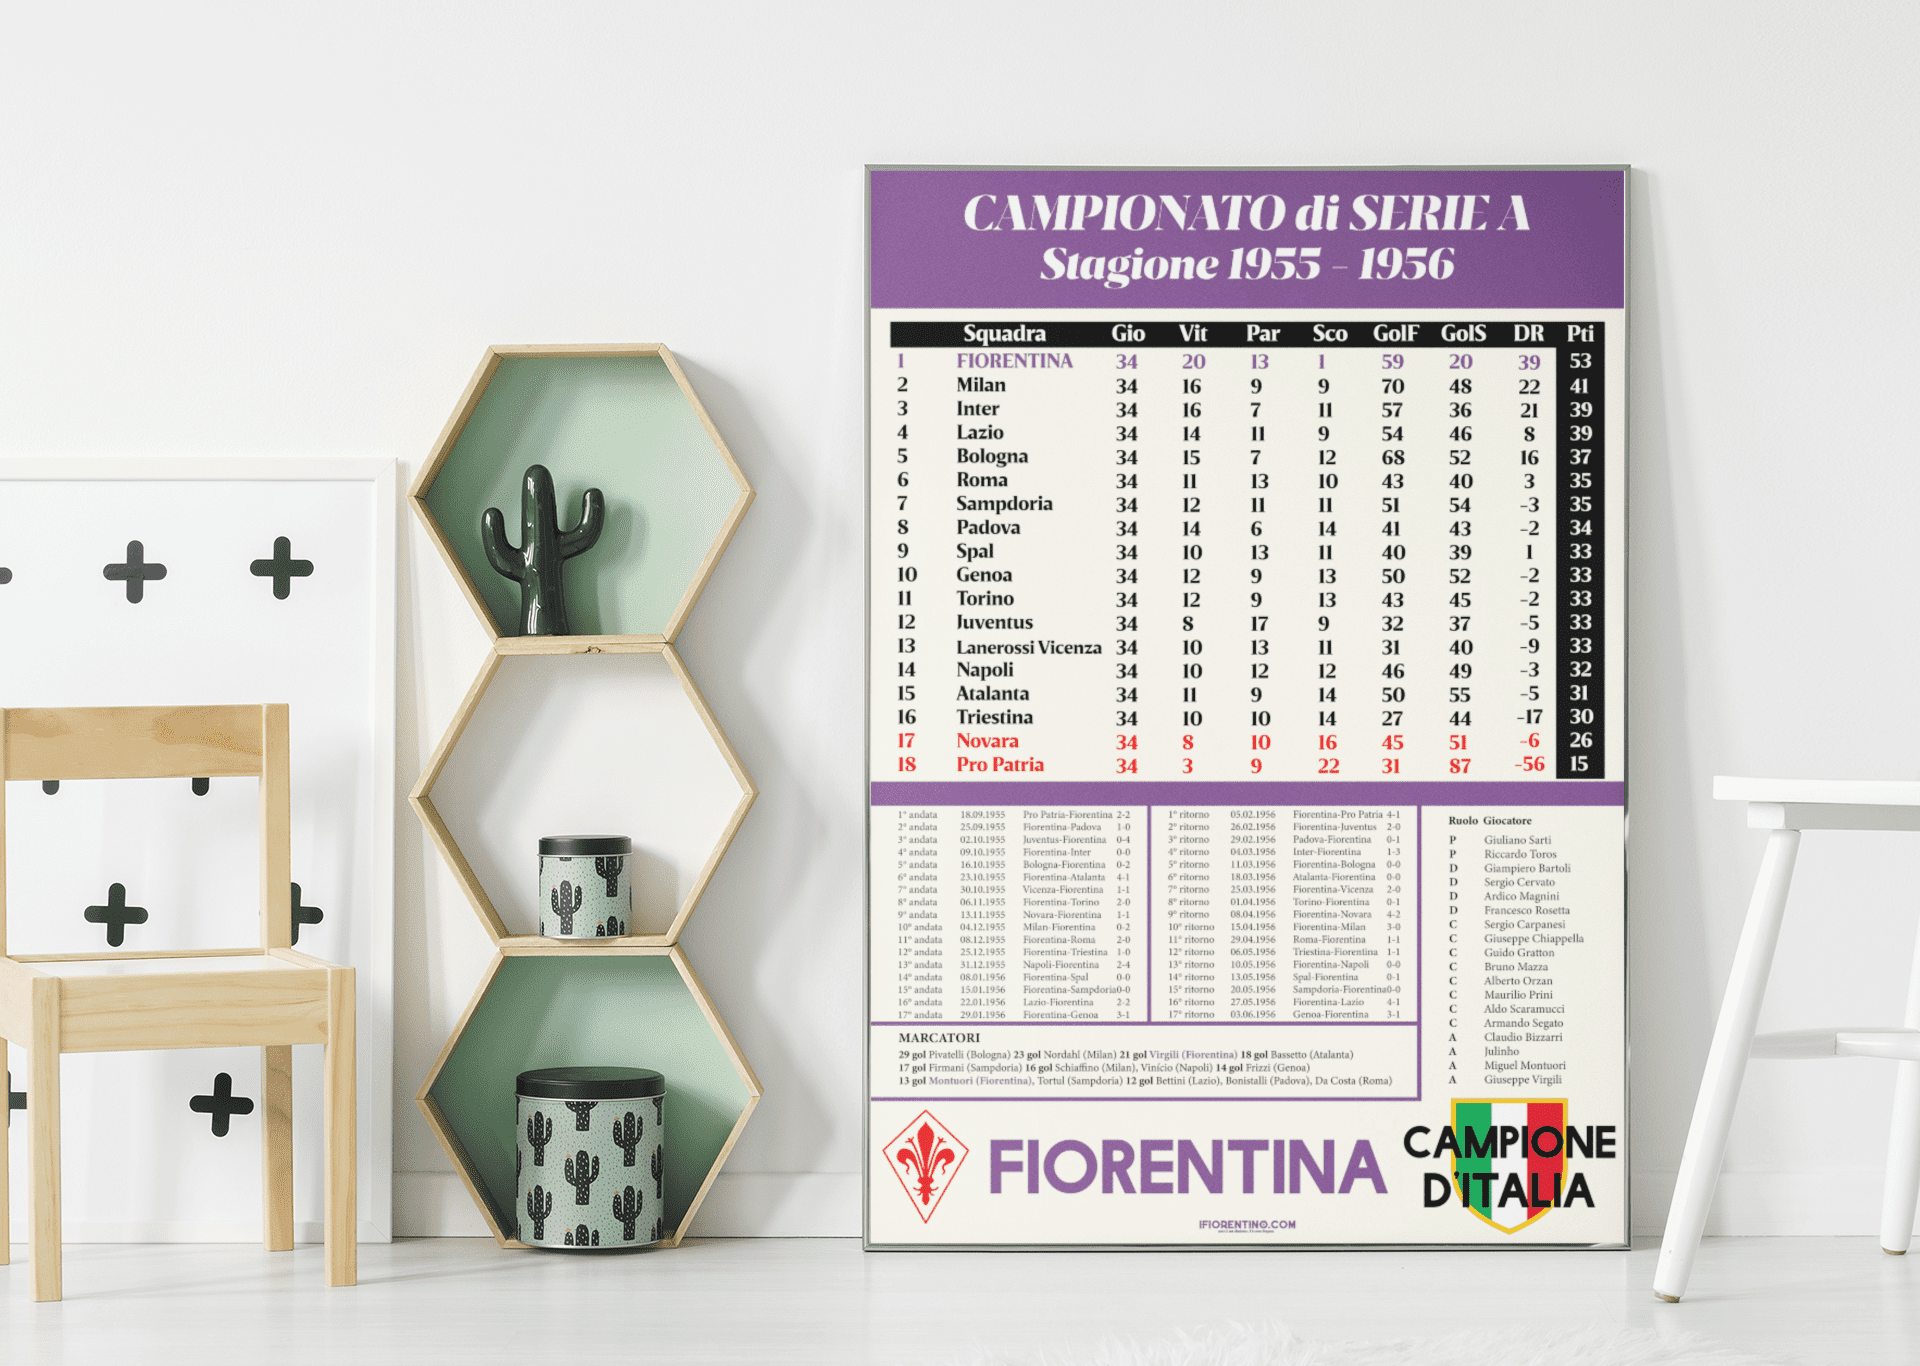 FIORENTINA CAMPIONE D'ITALIA 1955-1956 - poster fiorentini - poster firenze - regalo fiorentino - fiorentino  - foppeddittelo